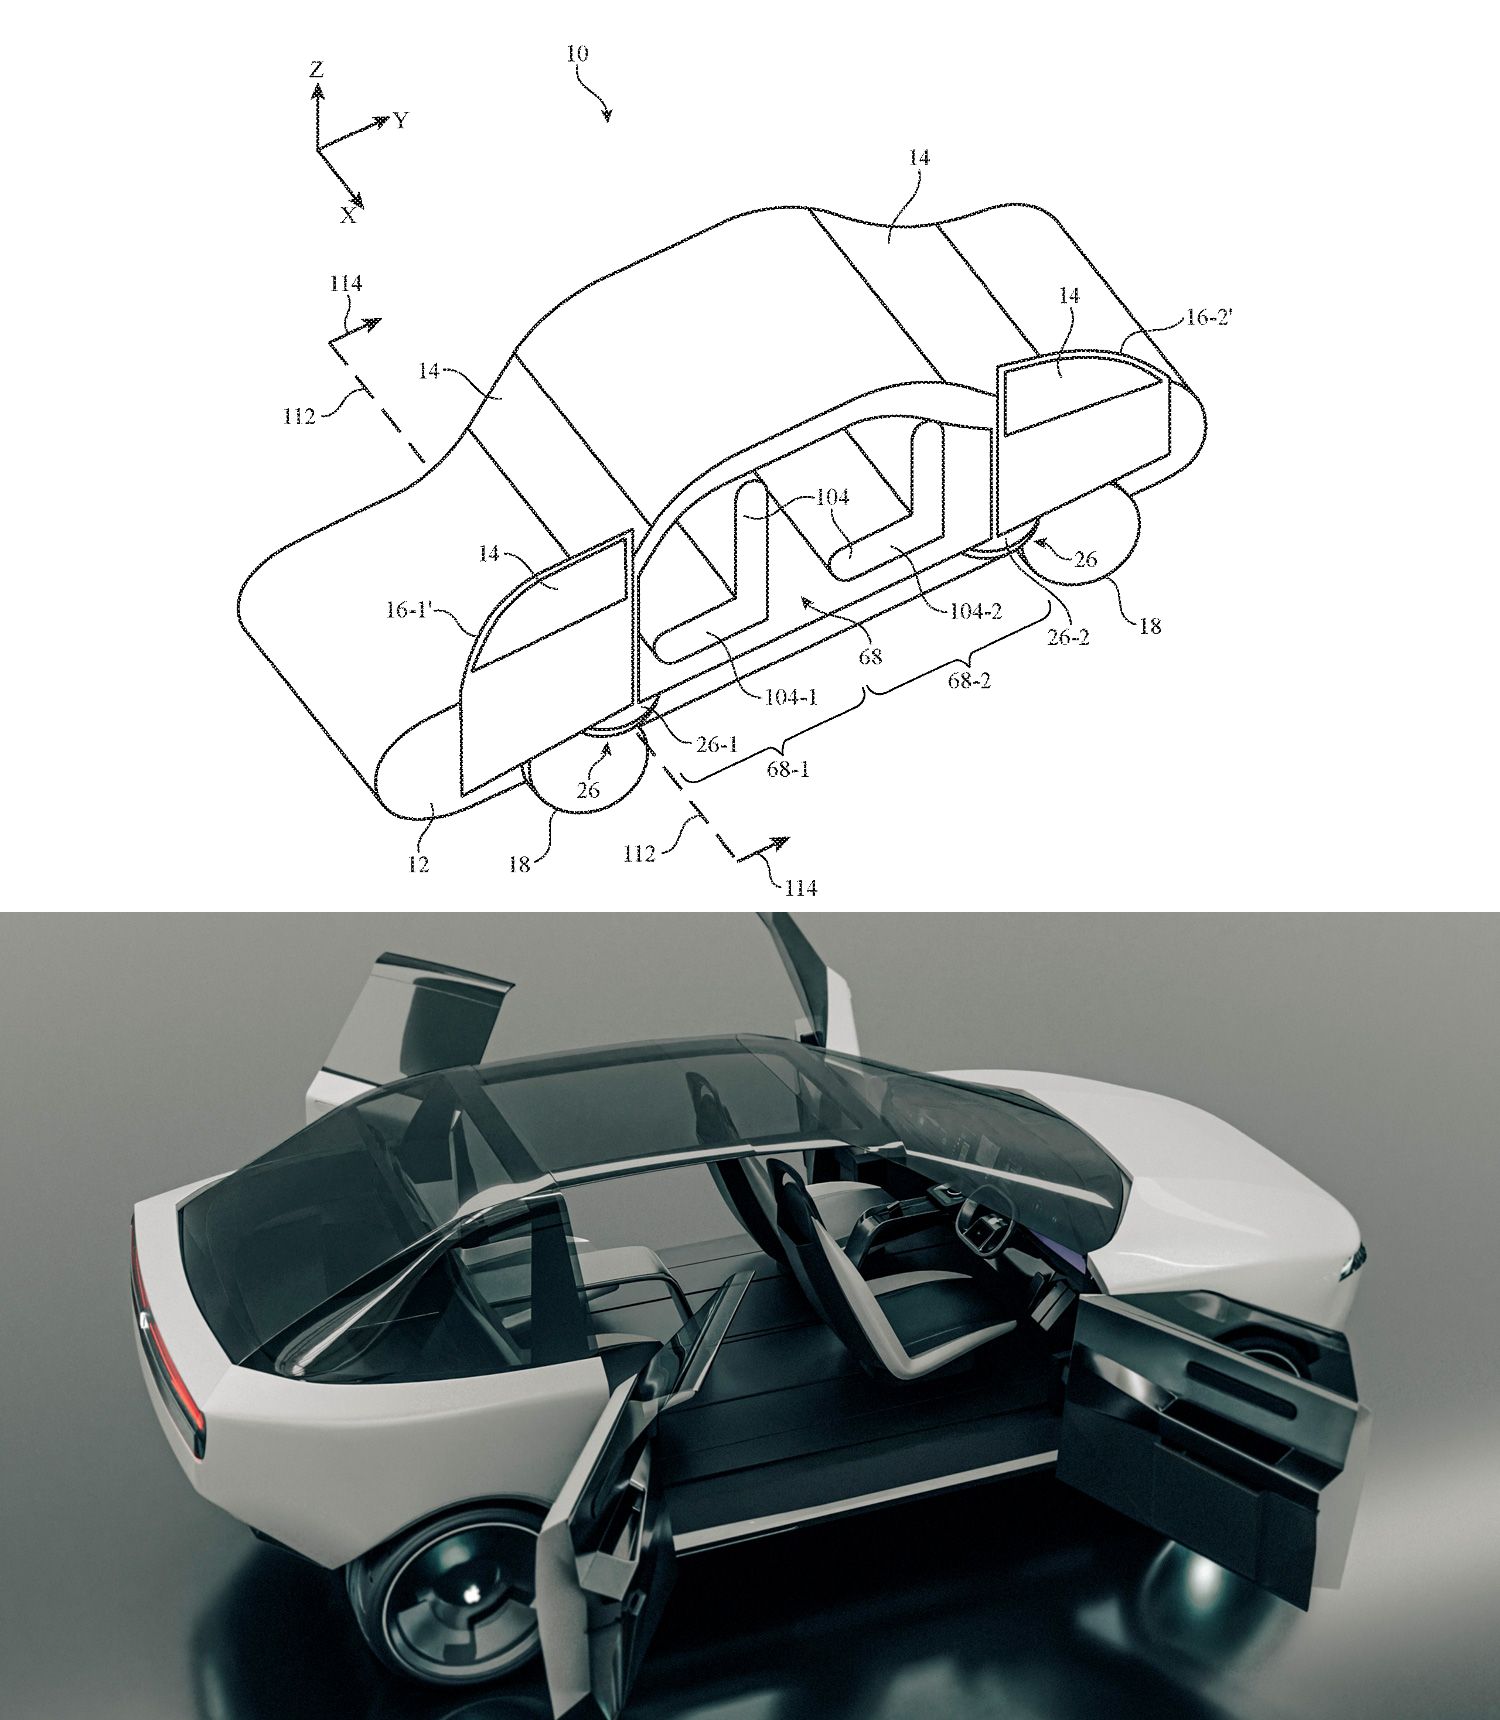 （上）Appleの特許画像, （下）特許を元にVanarama社が推測したデザイン